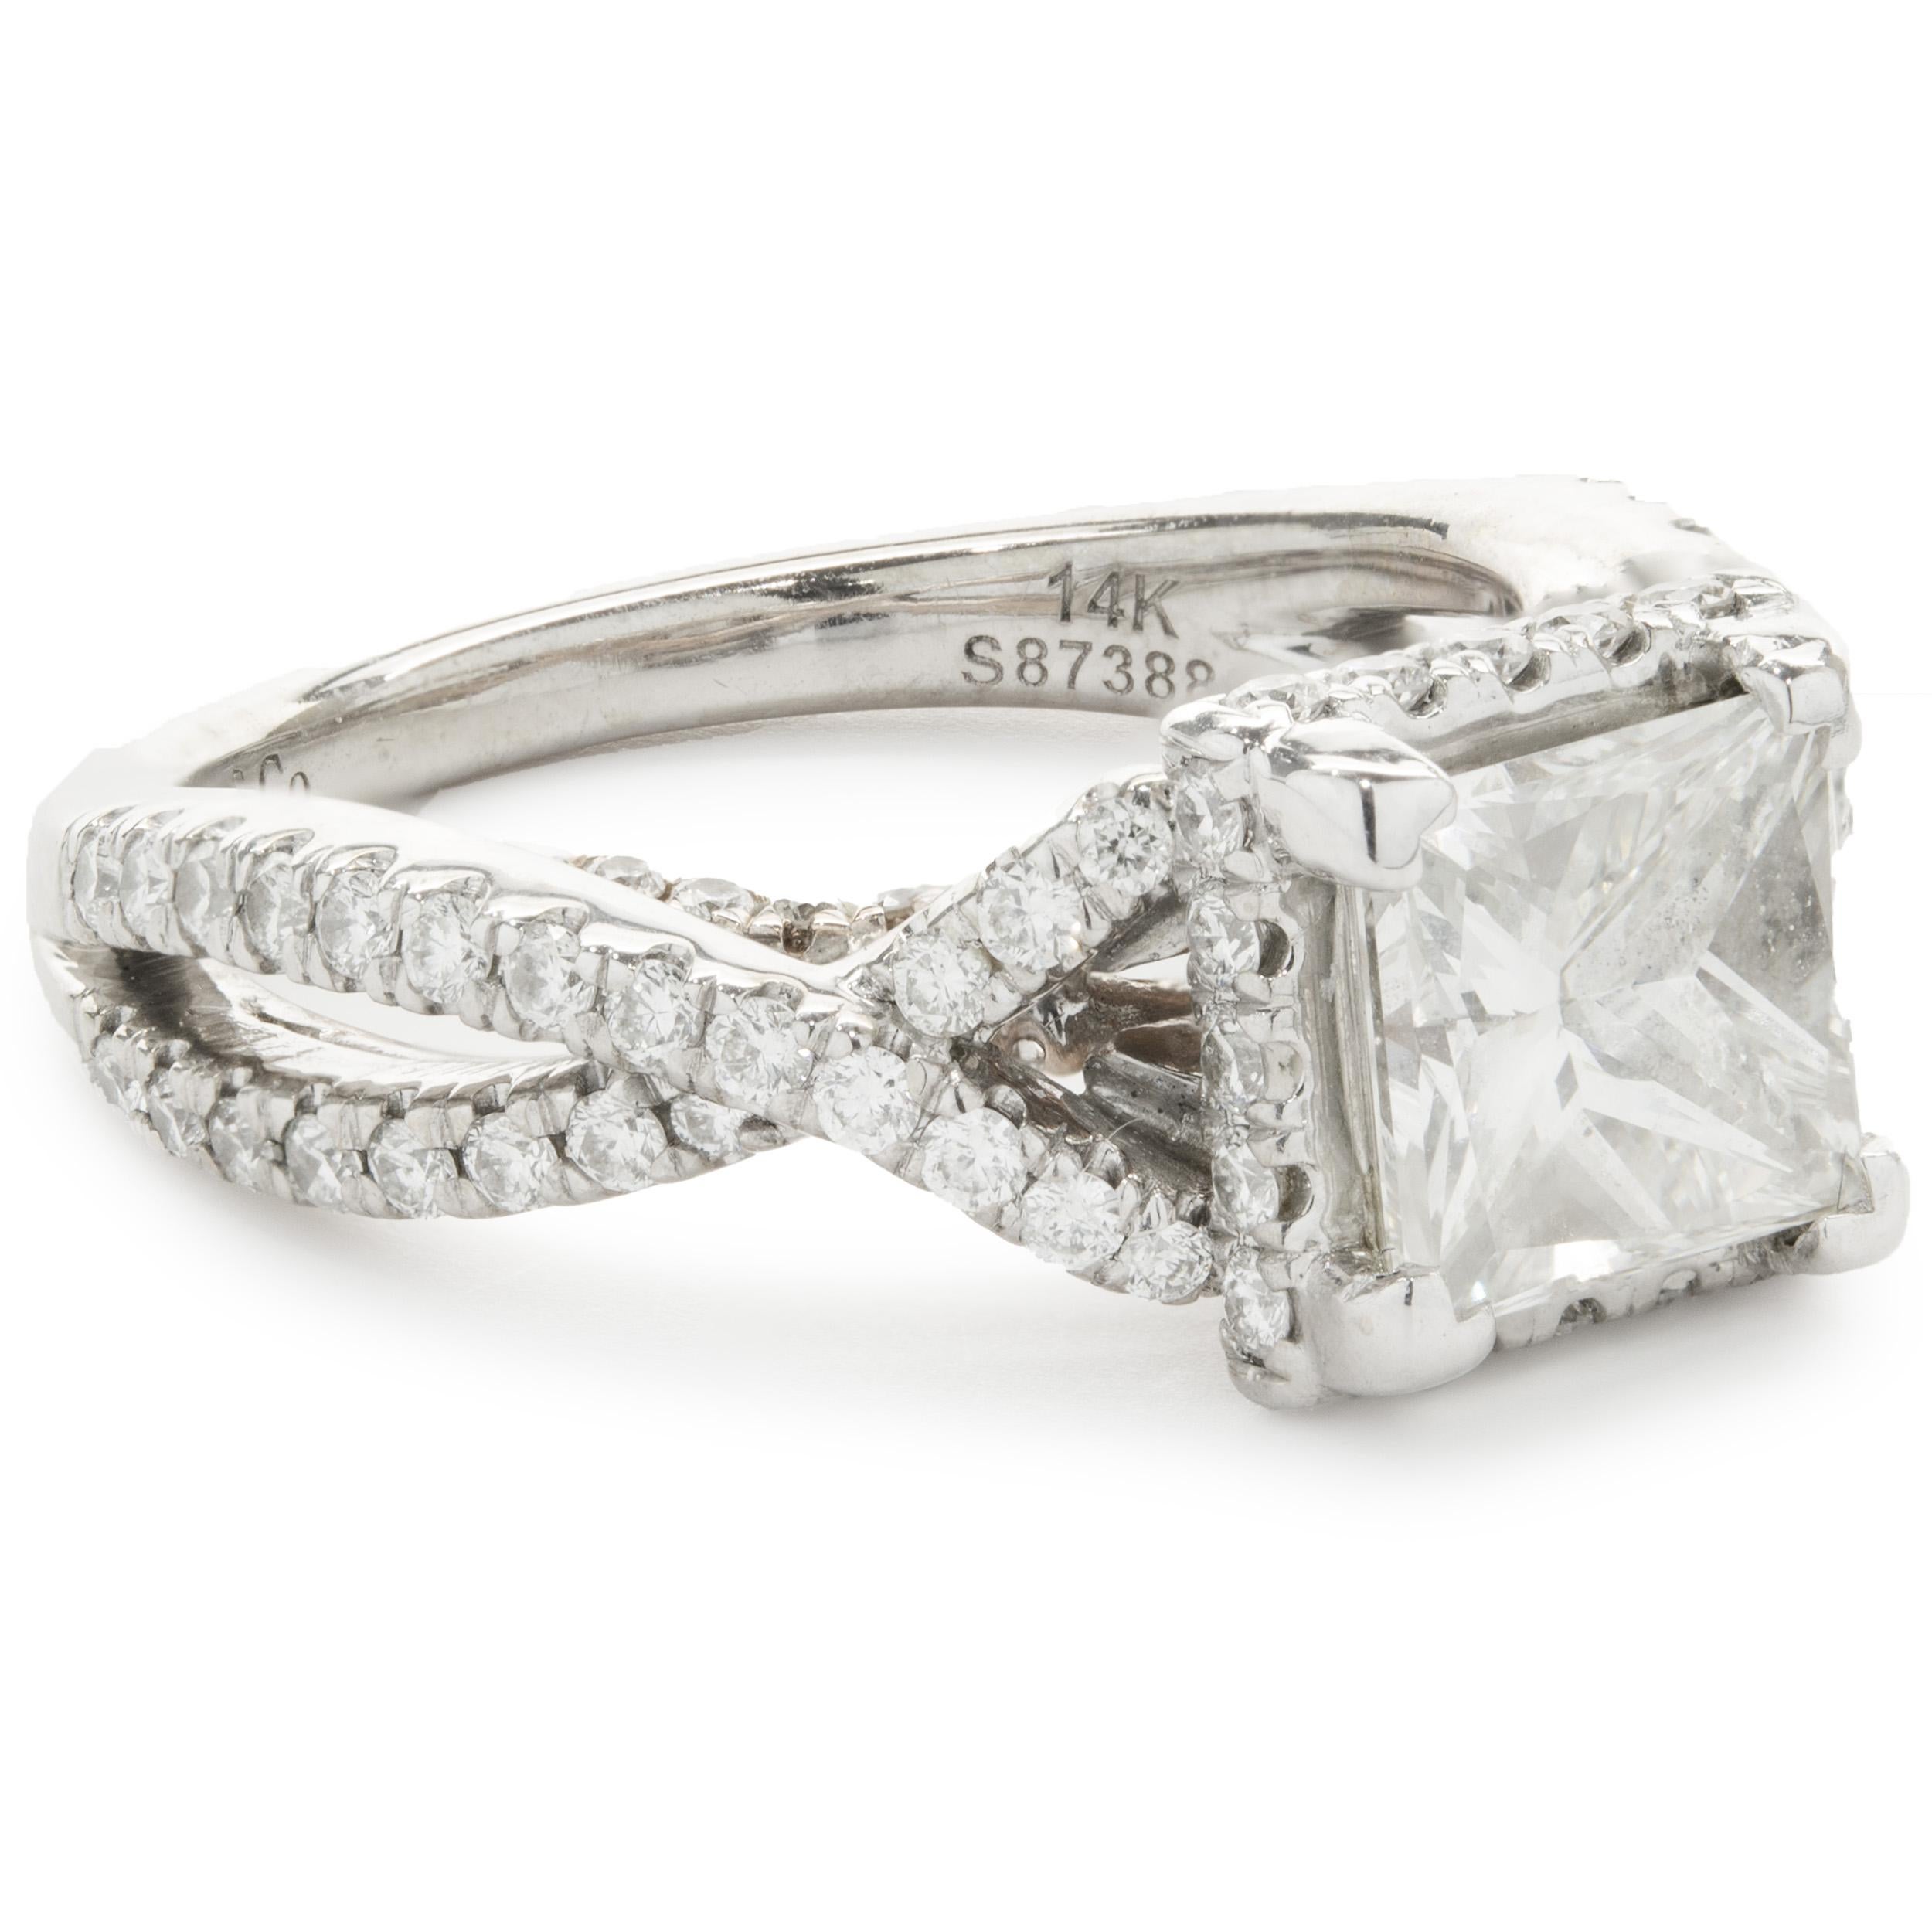 Designer: Gabriel & Co.
MATERIAL: 14K Weiß- und Roségold
Diamant: 1 Prinzess-Schliff = 1,52ct
Farbe: J
Klarheit: VVS2
GIA: 5182982122
Diamant: 100 runder Brillantschliff = 1,25cttw
Farbe: G
Klarheit: SI1
Ringgröße: 5.75 (bitte erlauben Sie zwei